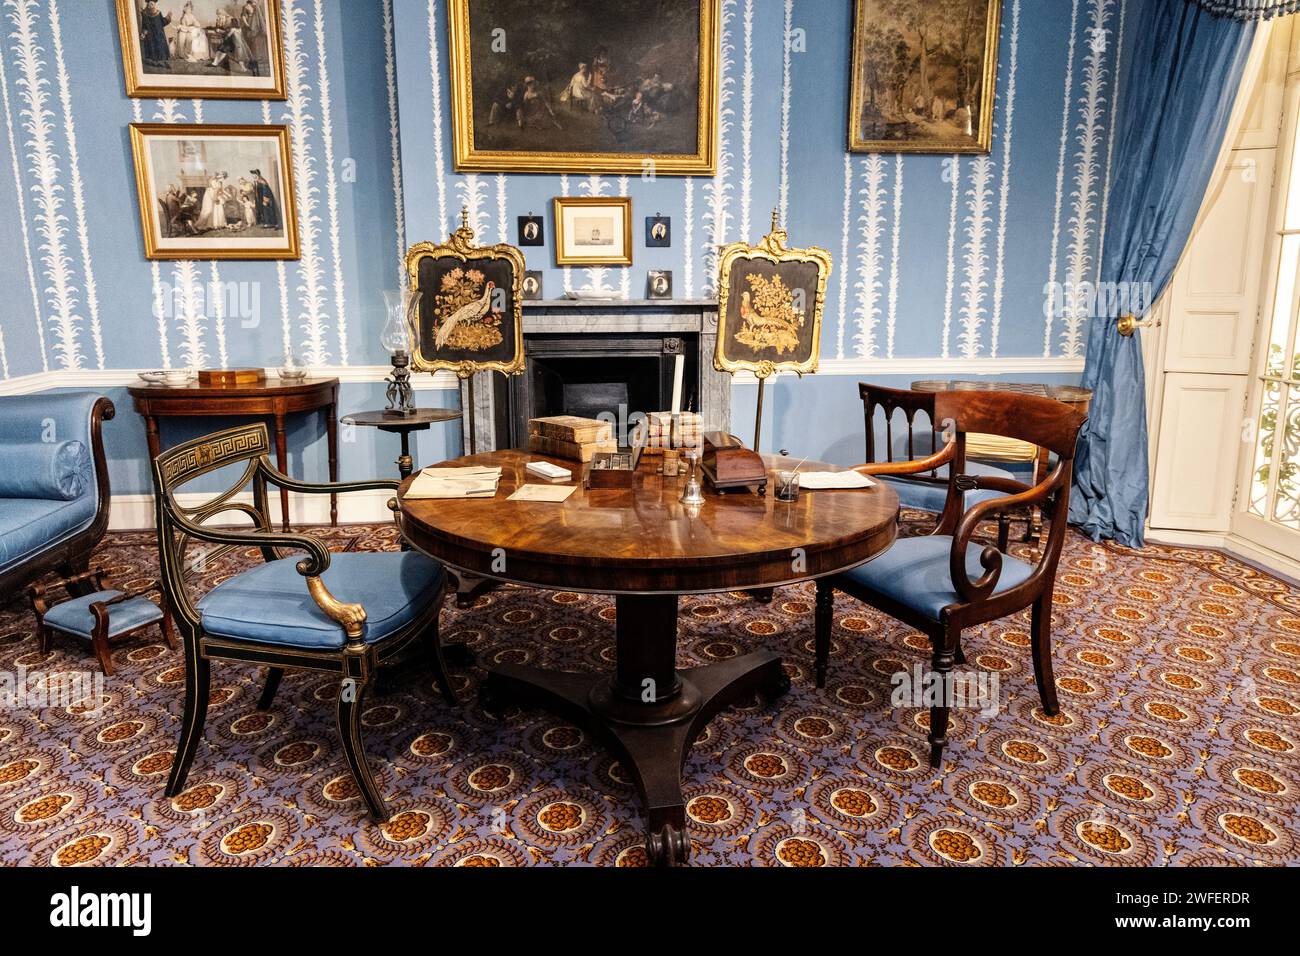 Un salon des années 1830 avec table ronde et fauteuils Banque D'Images